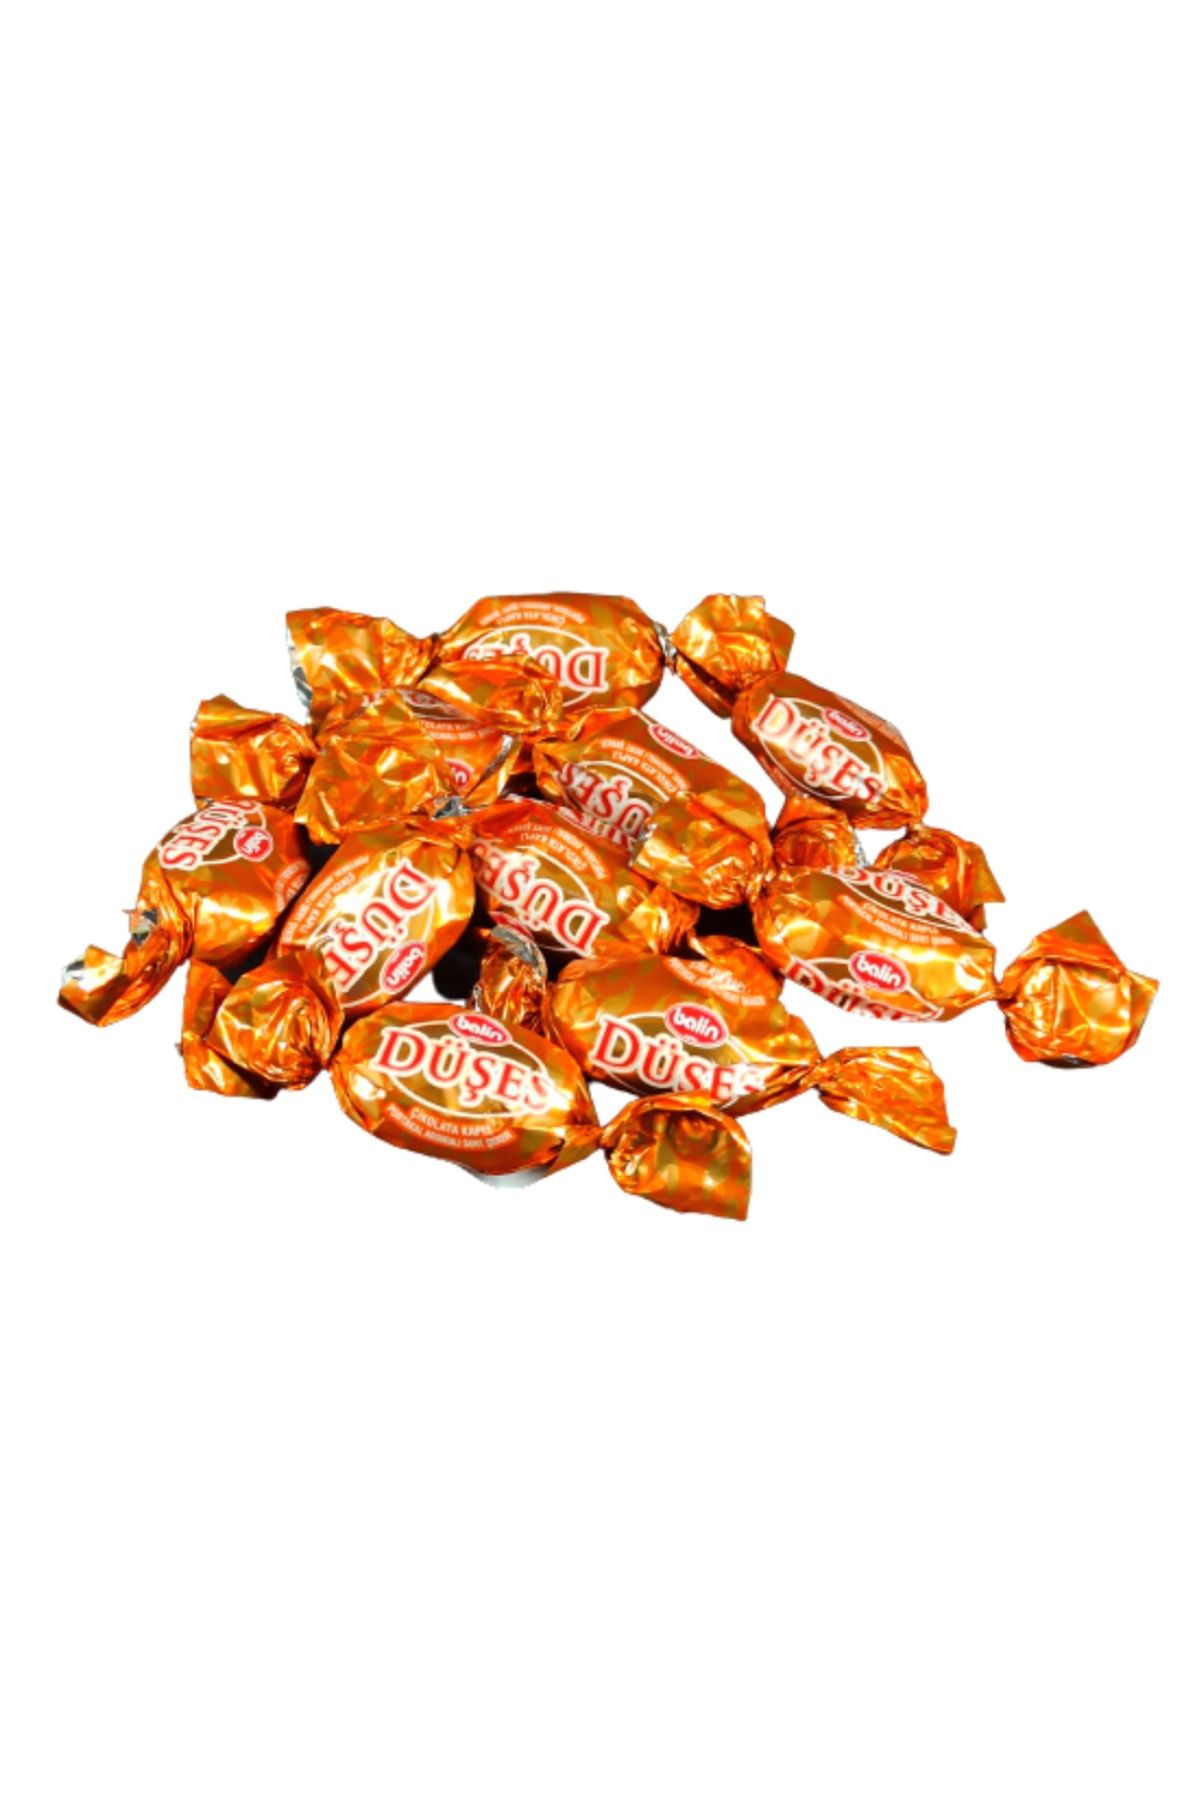 Balin Düşes Çikolata Kaplı Portakallı Şeker 1000 Gr